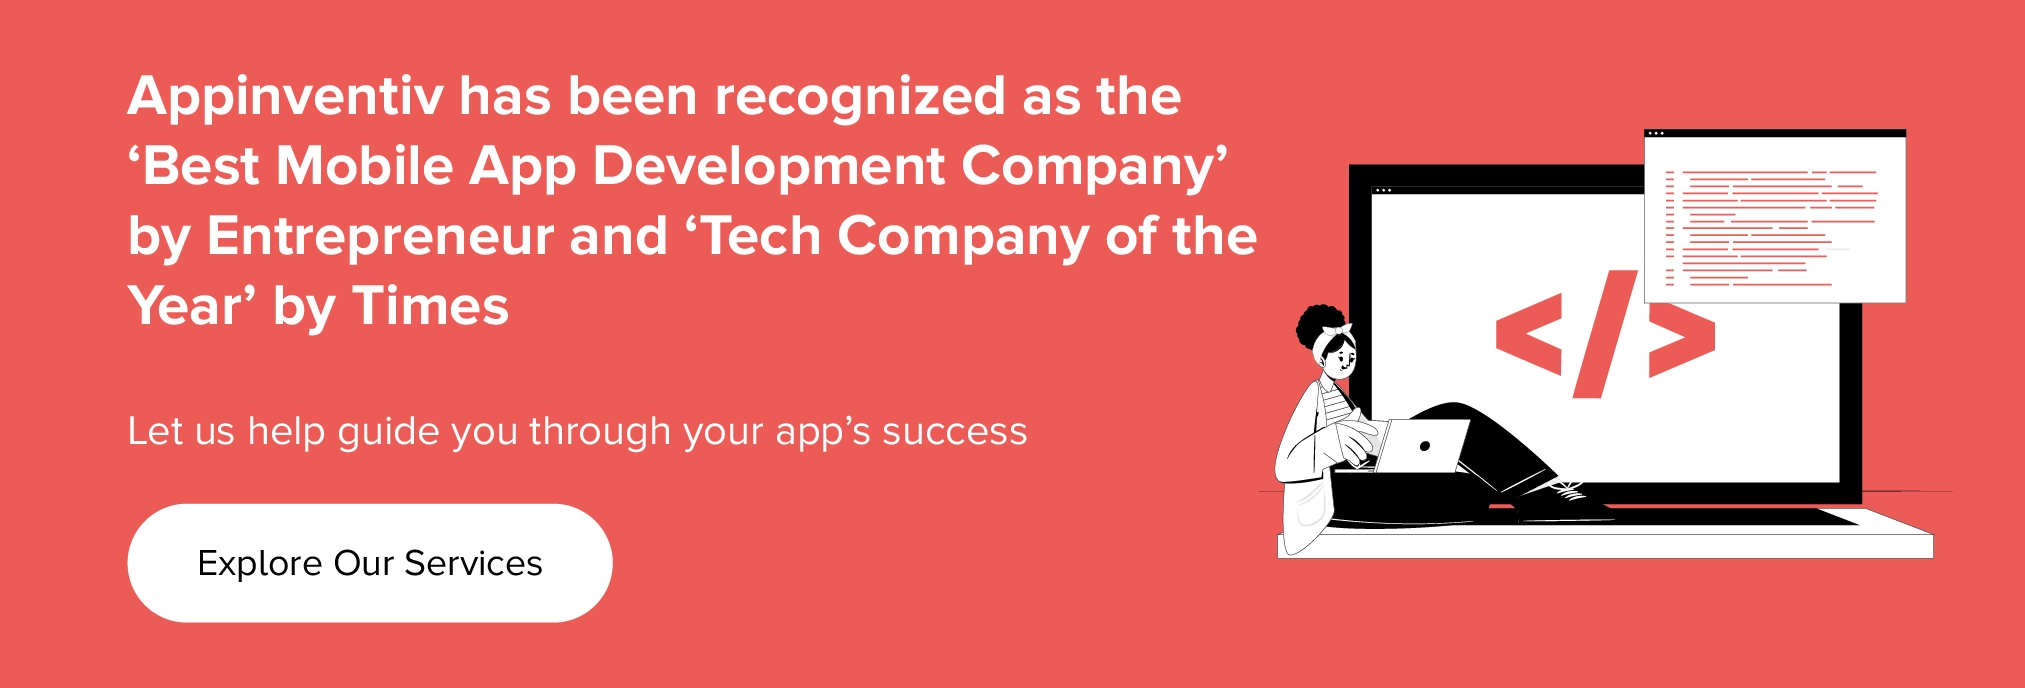 Appinventiv は、Entrepreneur によって「ベストモバイルアプリ開発会社」として、また Times によって「Tech Company of the Year」として認められています。